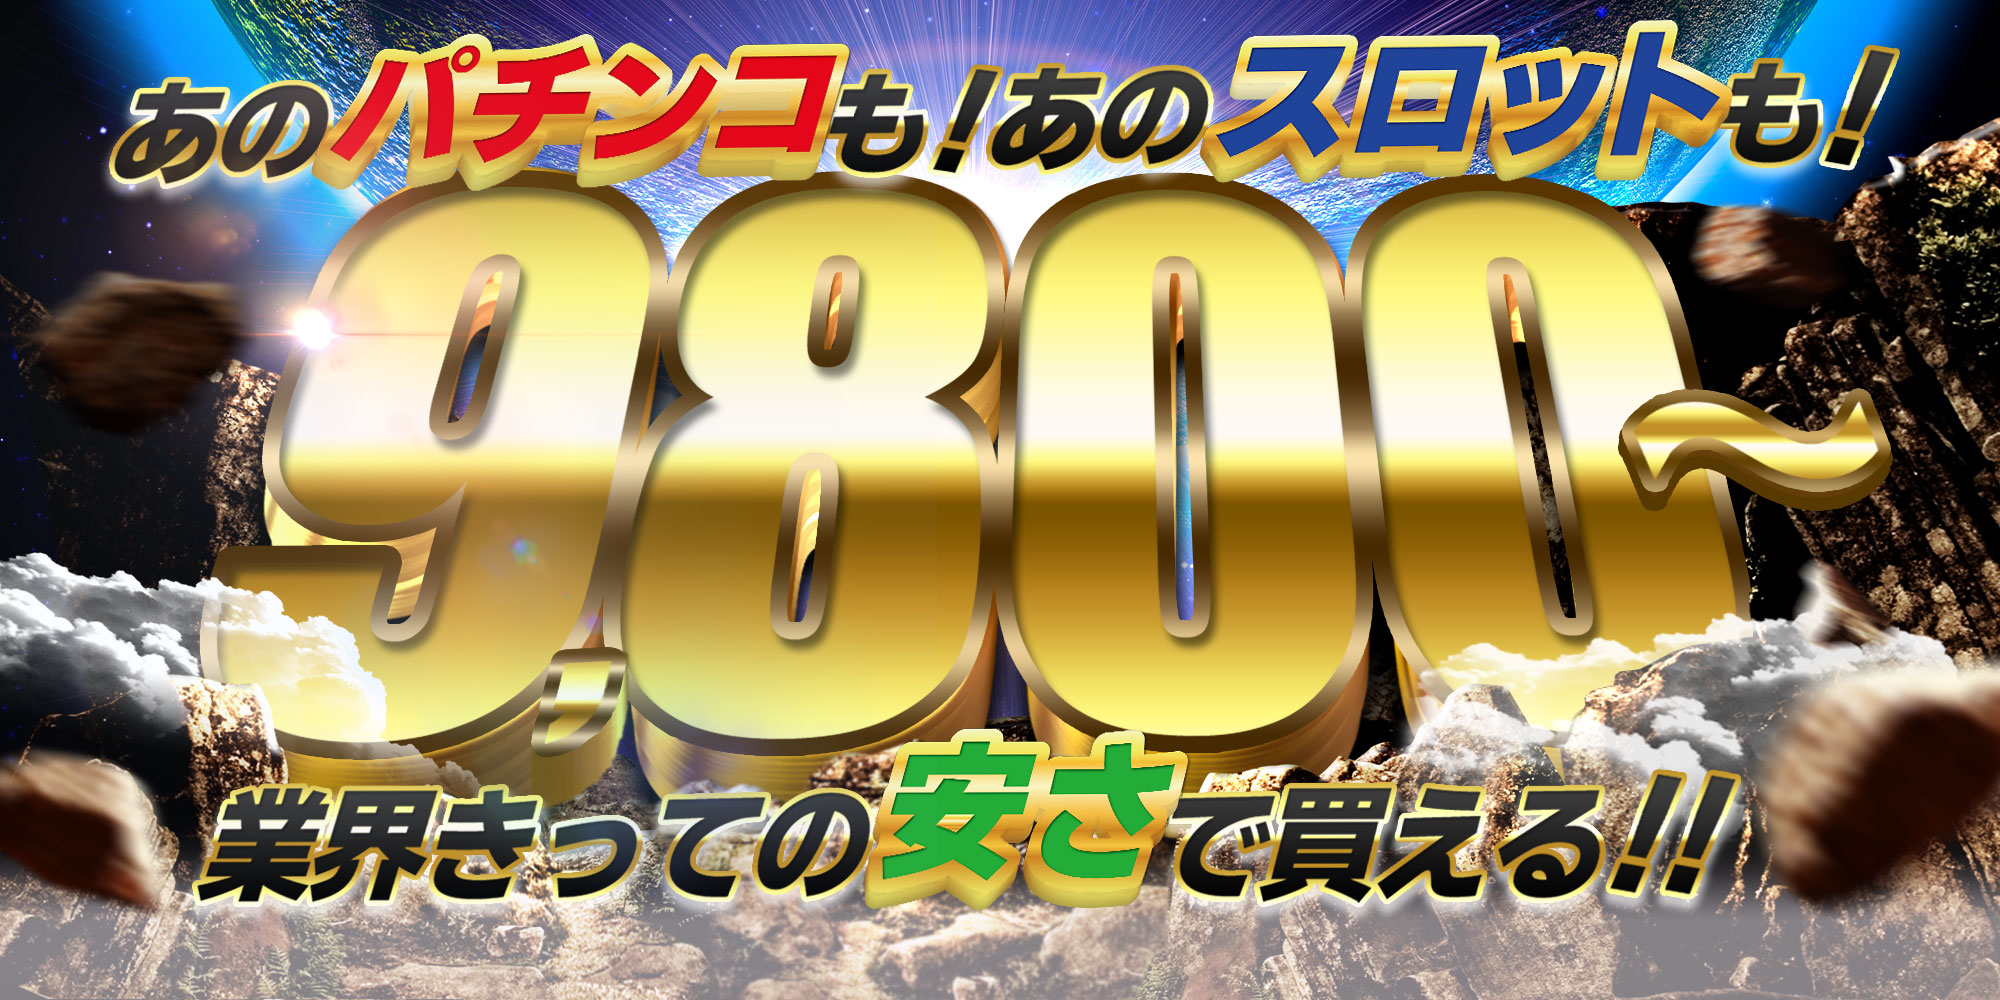 9800円バナー